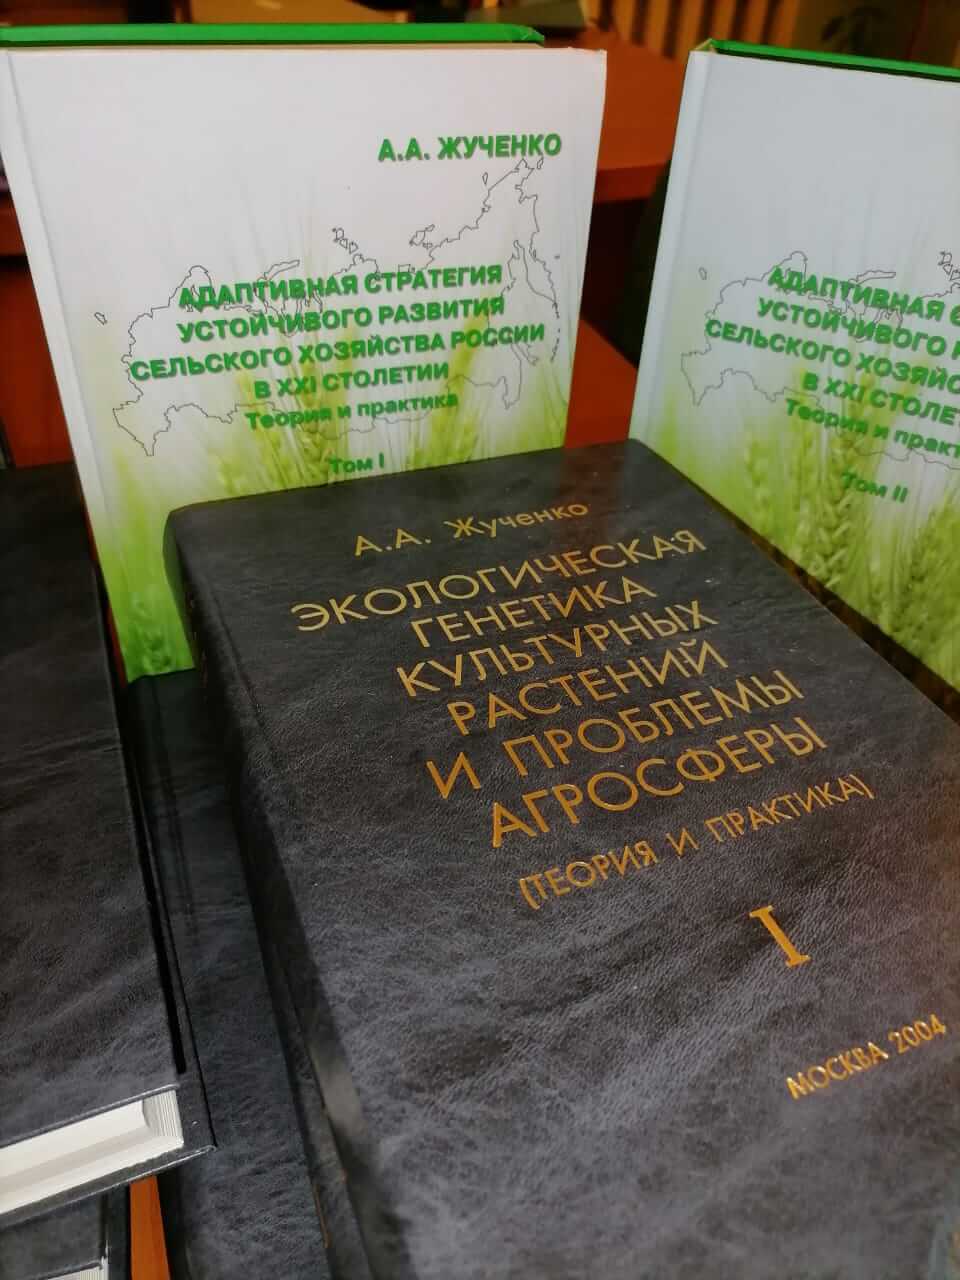 Подробнее о статье Библиотека Субтропического научного центра пополнилась трудами академика А.А. Жученко